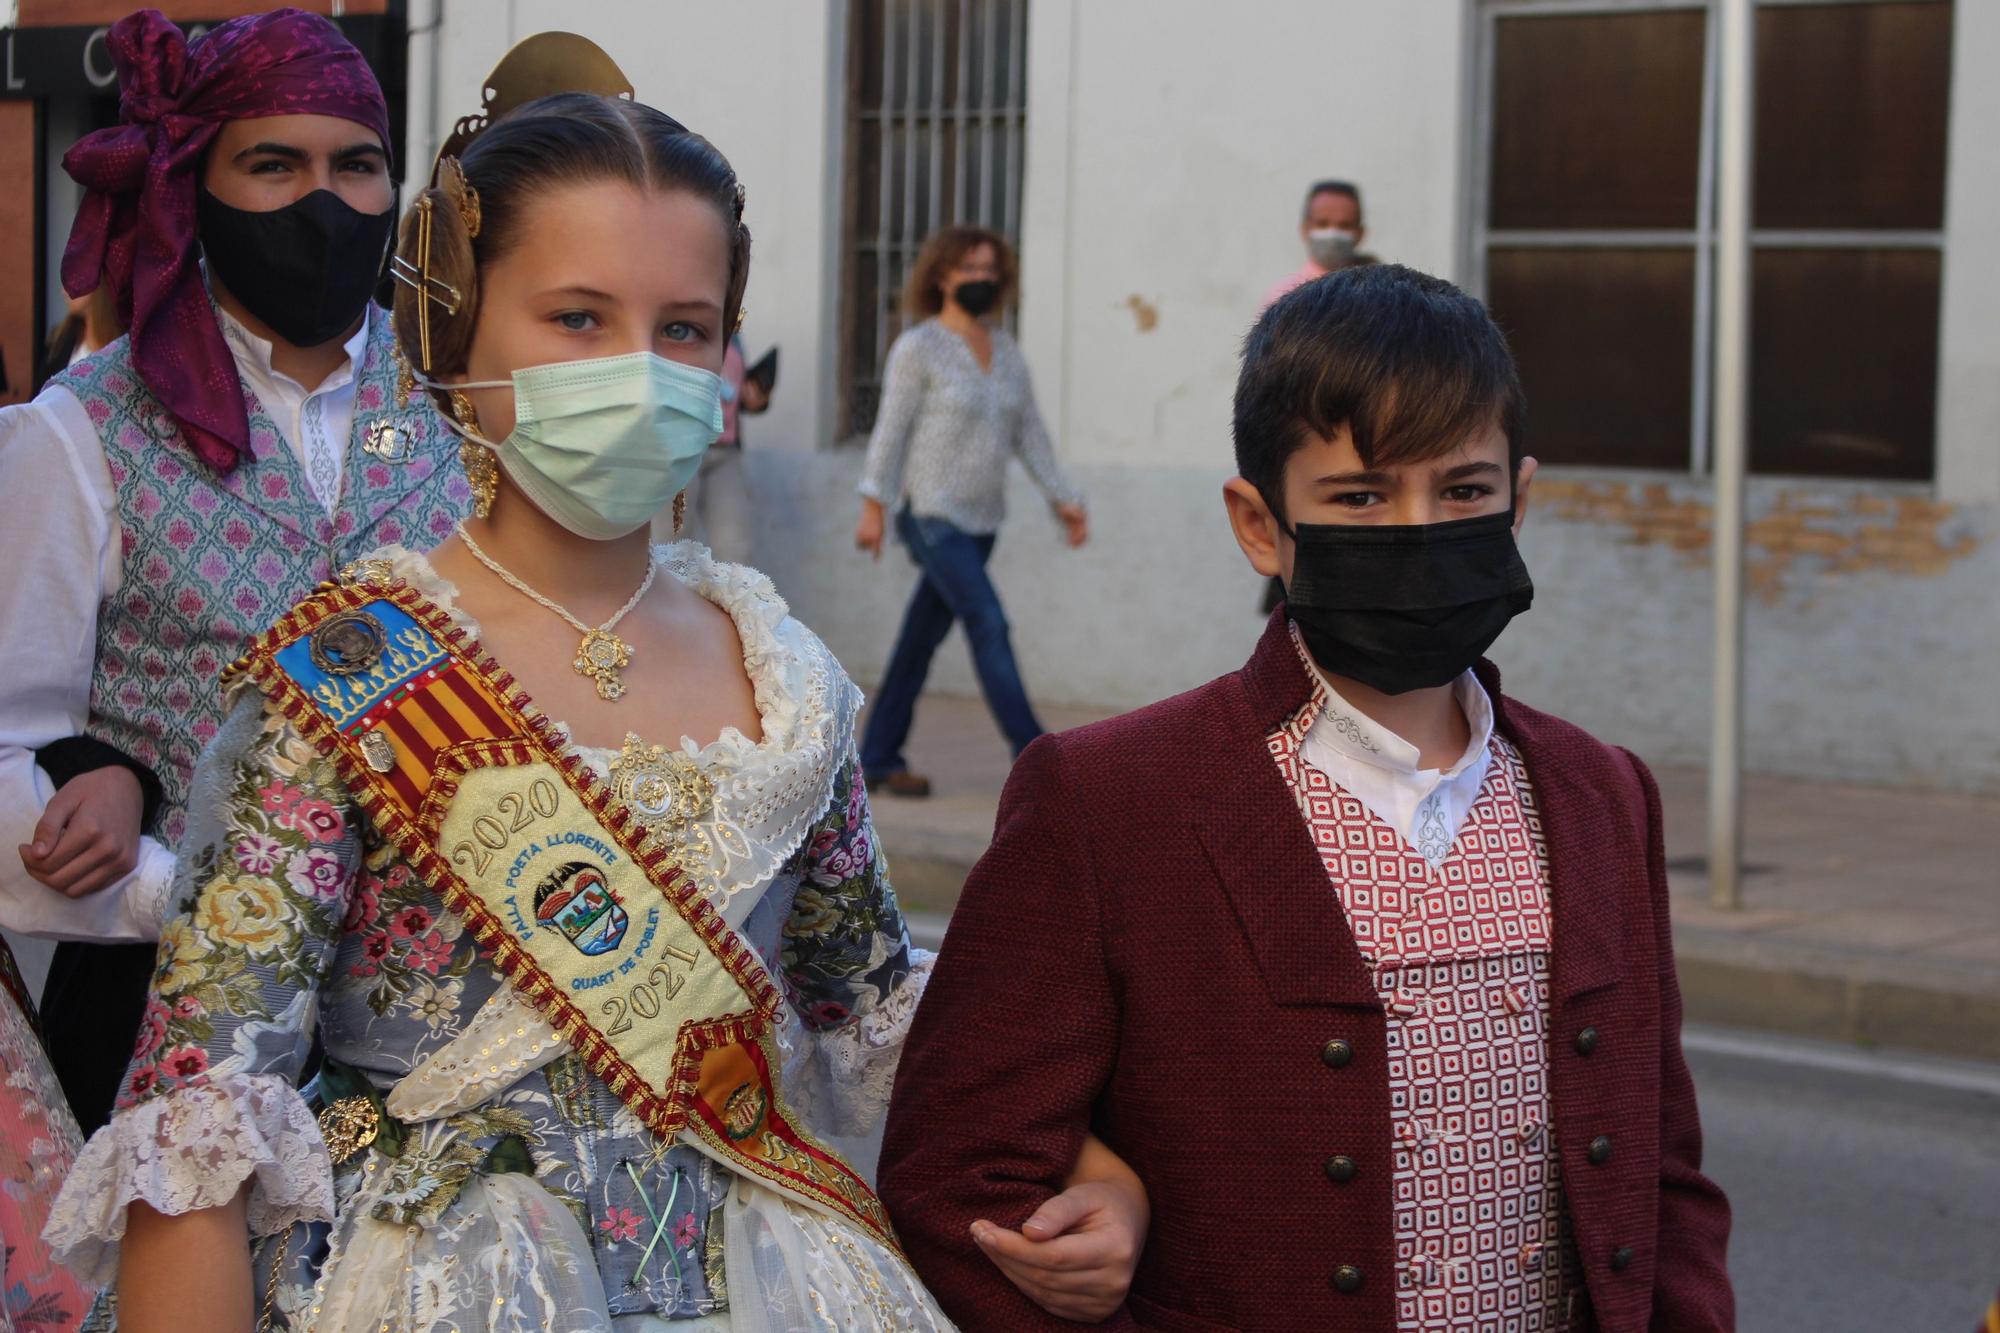 Carmen, Nerea y las cortes acompañan a las fallas de Quart y Xirivella en la procesión de la Senyera